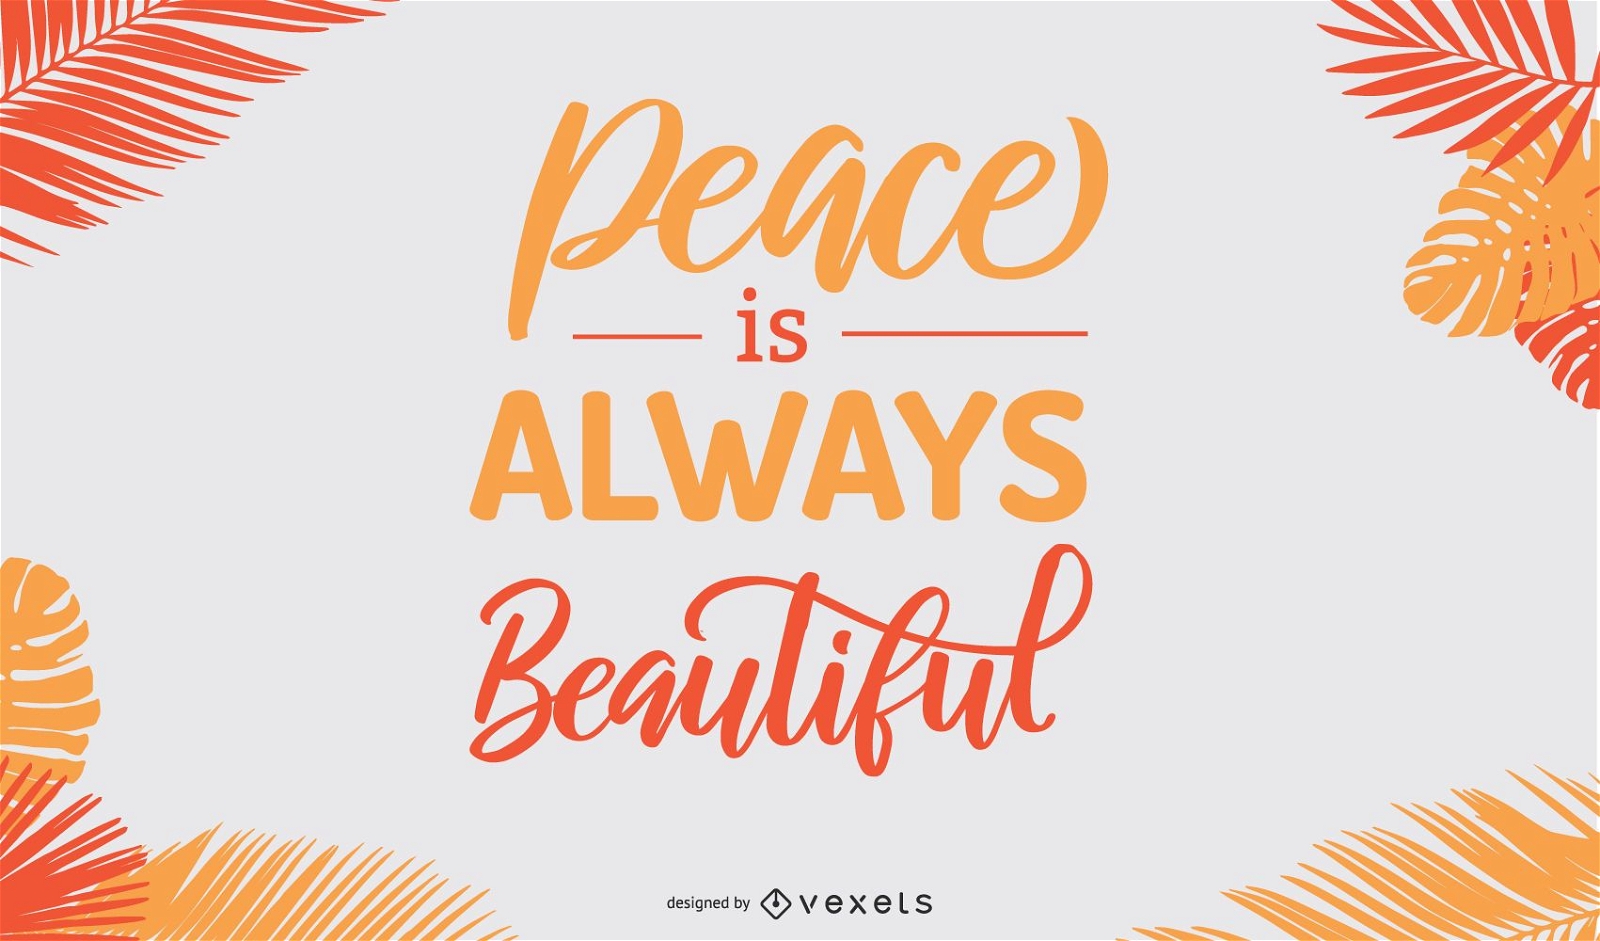 La paz es un hermoso diseño de cartel.